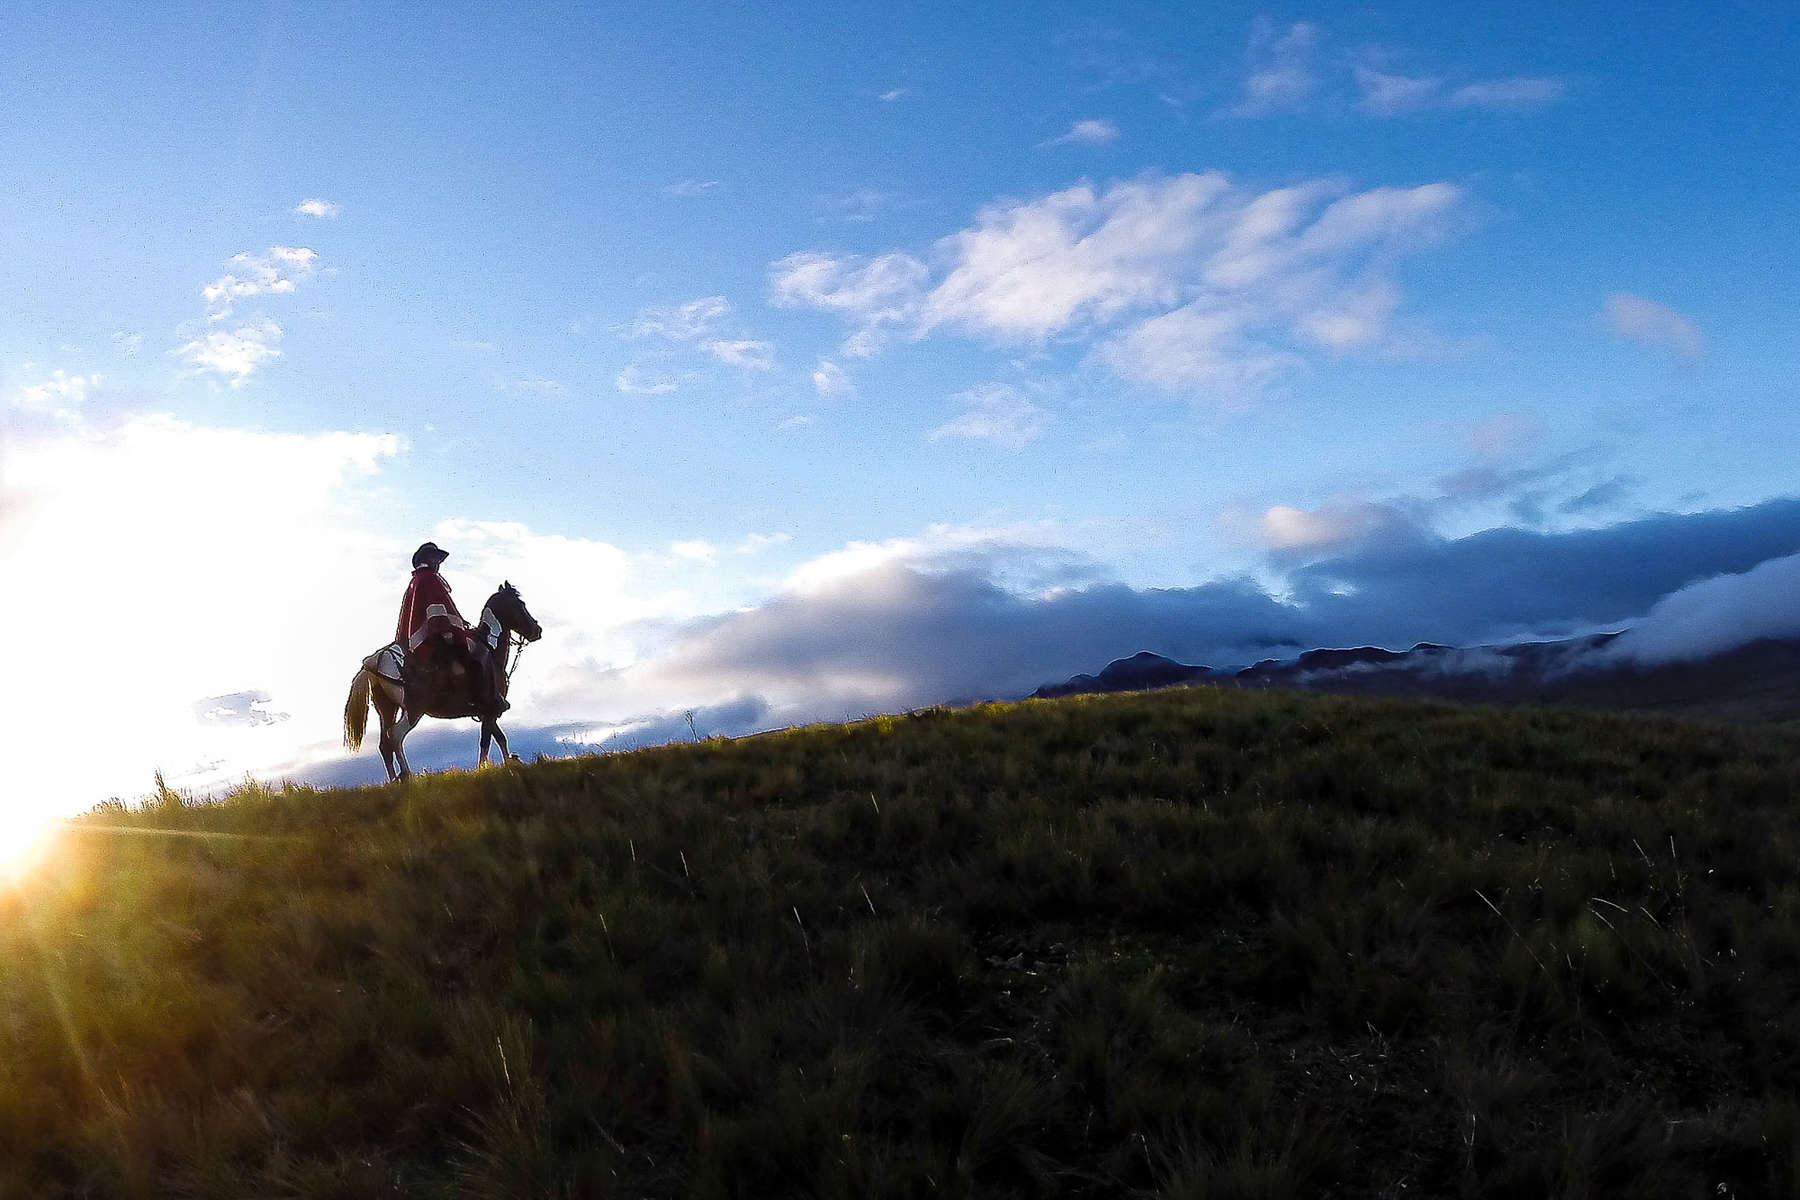 Horse and rider in Ecuador